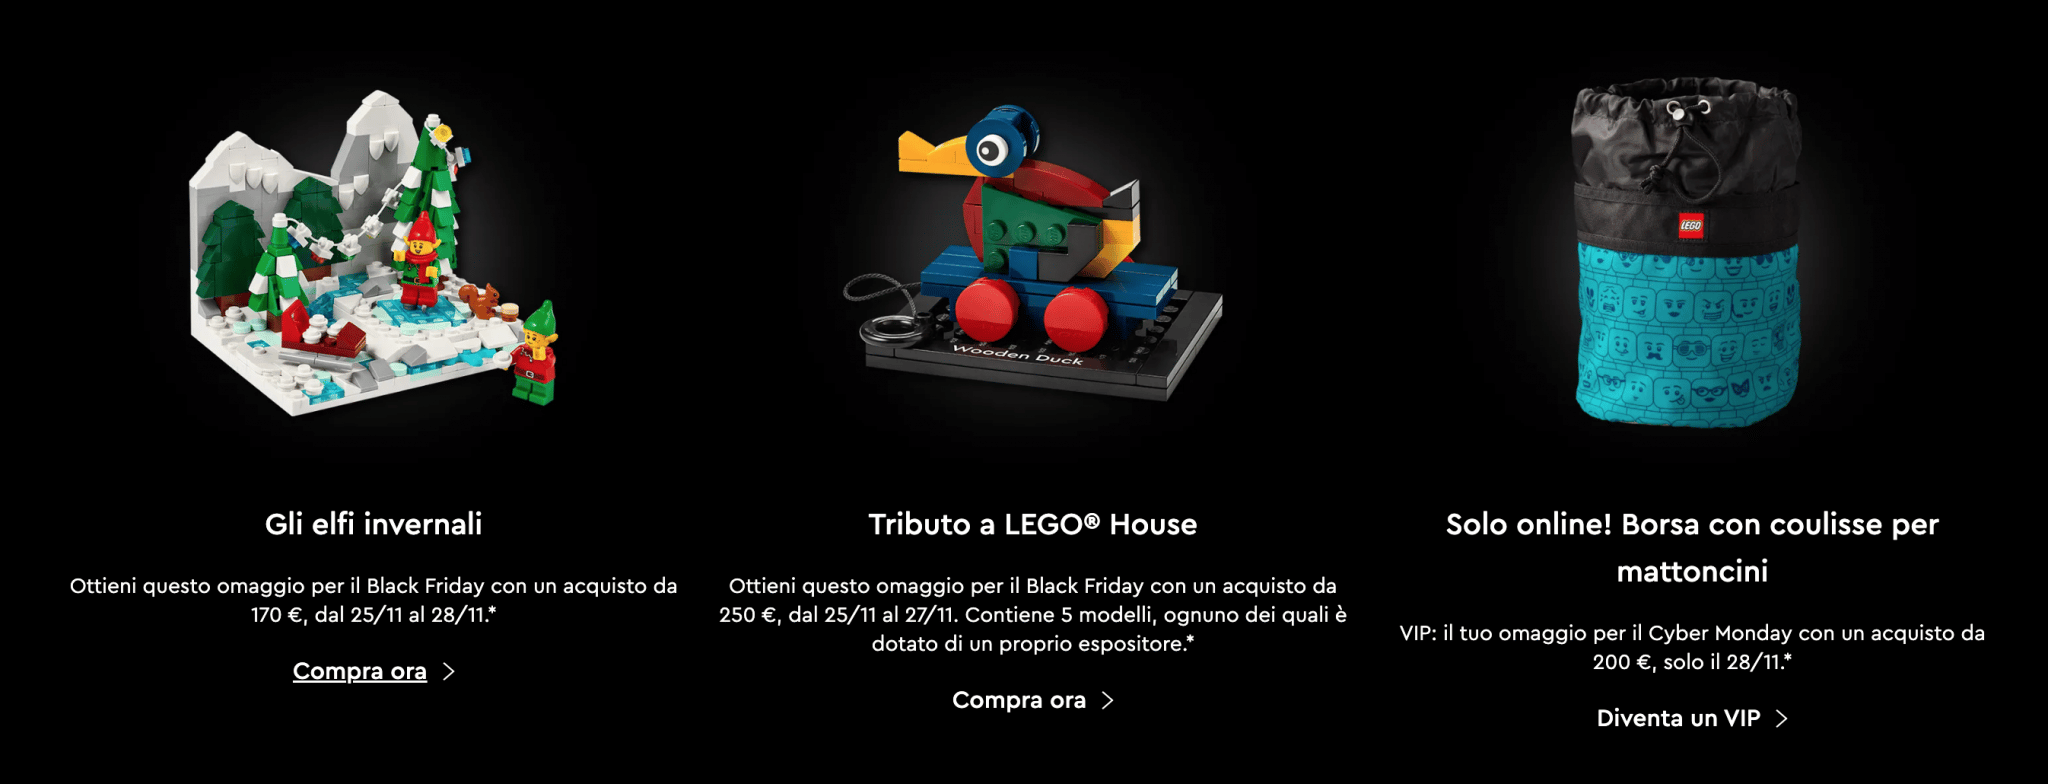 Se vogliamo investire sei Lego, dobbiamo sapere che il valore di questi set aumenta nel futuro